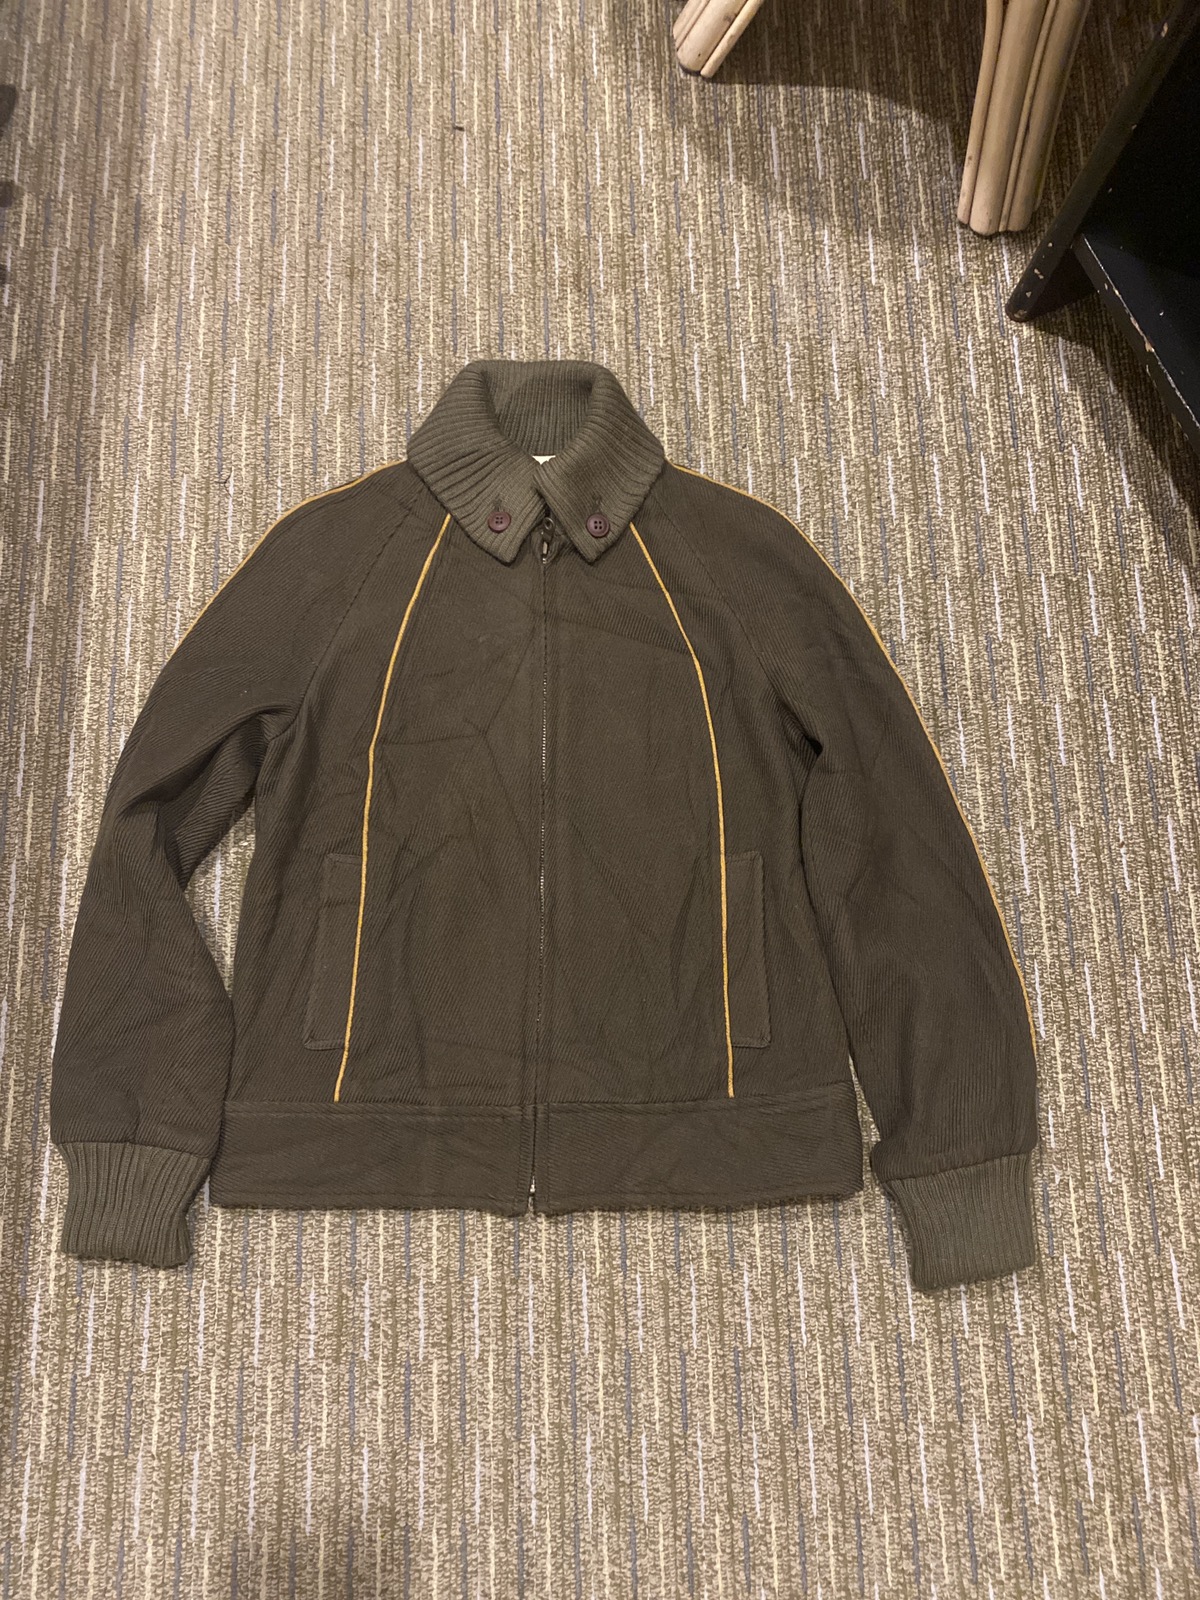 Japanese Brand - Vintage Relacher Coat Jacket JapaneseBrand Nice Design - 1